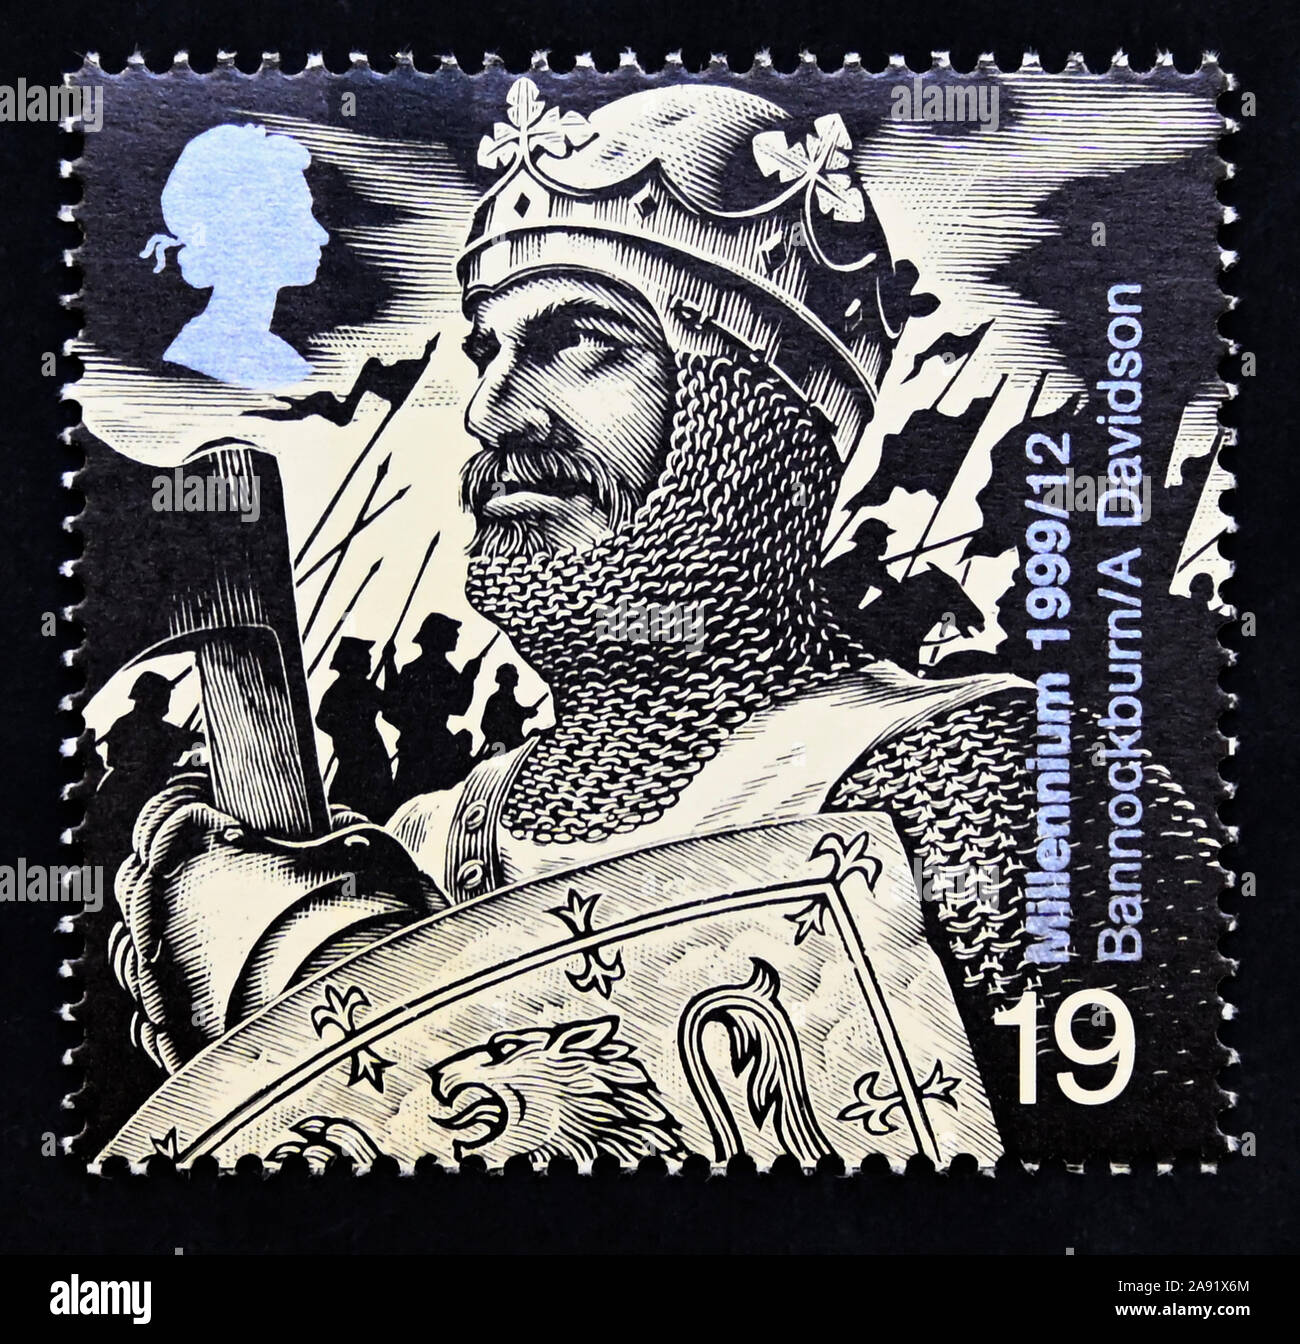 Briefmarke. Großbritannien. Königin Elizabeth II. Millennium Serie. Die Geschichte vom Soldaten. Robert the Bruce (Schlacht von Bannockburn, 1314). 19 s. Stockfoto